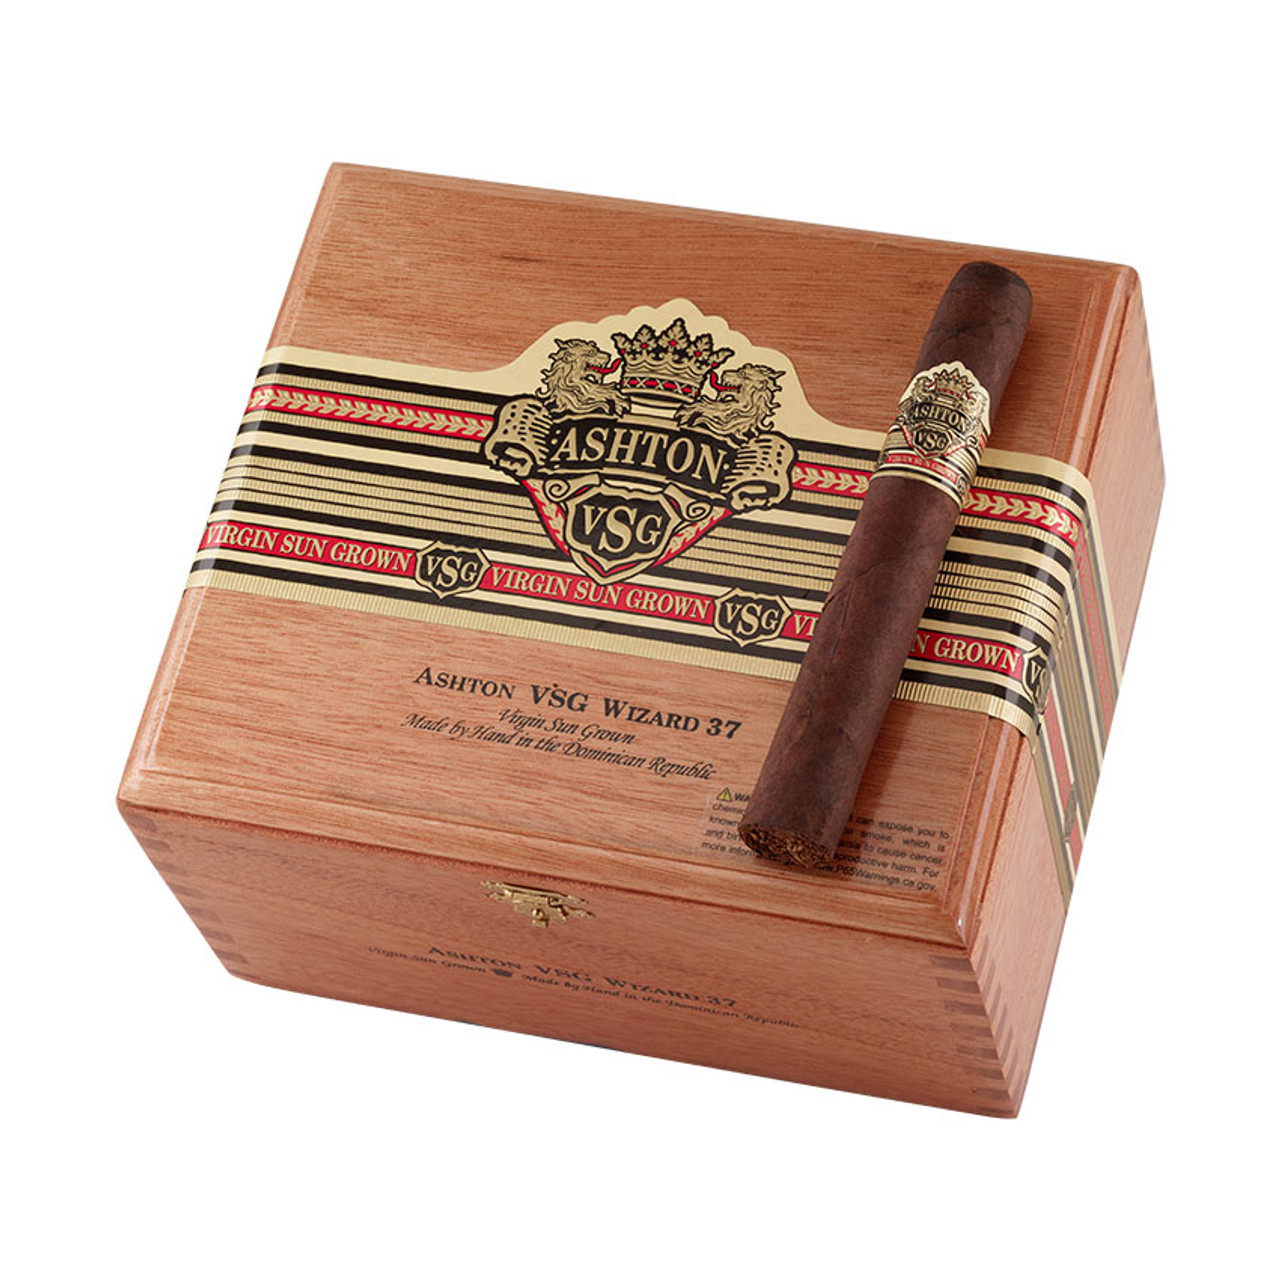 Ashton VSG Wizard Cigars - 6 x 56 (Box of 37) *Box